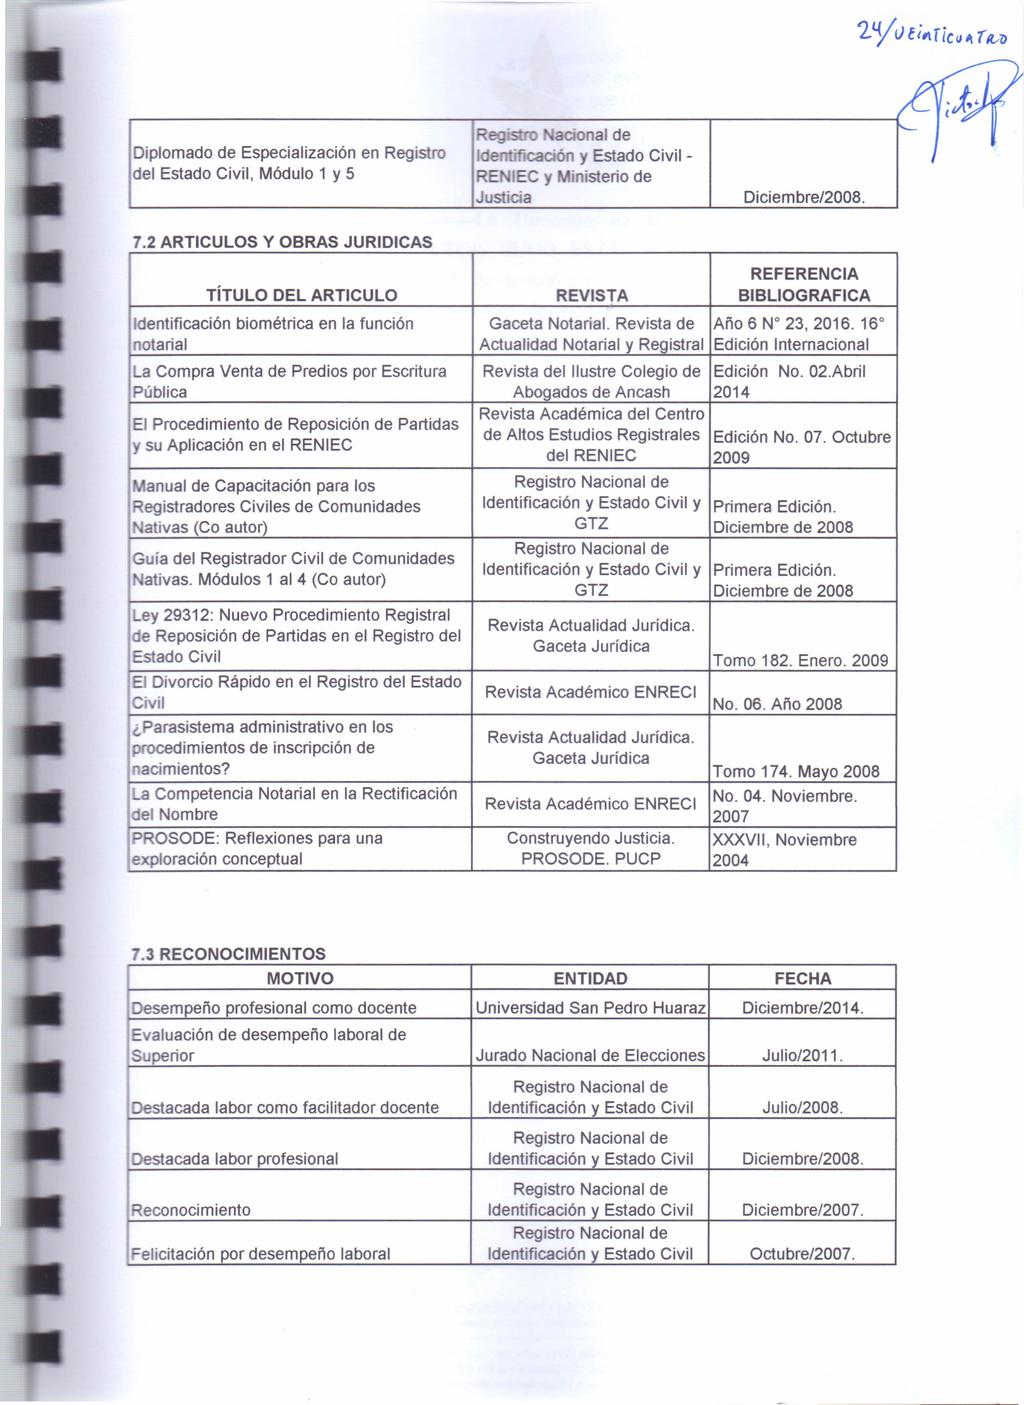 Diplomado de Especialización en Registro del Estado Civil, Módulo 1 y 5 a onal de mrñcaoón y Estado Civil - RE lec Y inisterio de Justicia Diciembre/2008. 7.